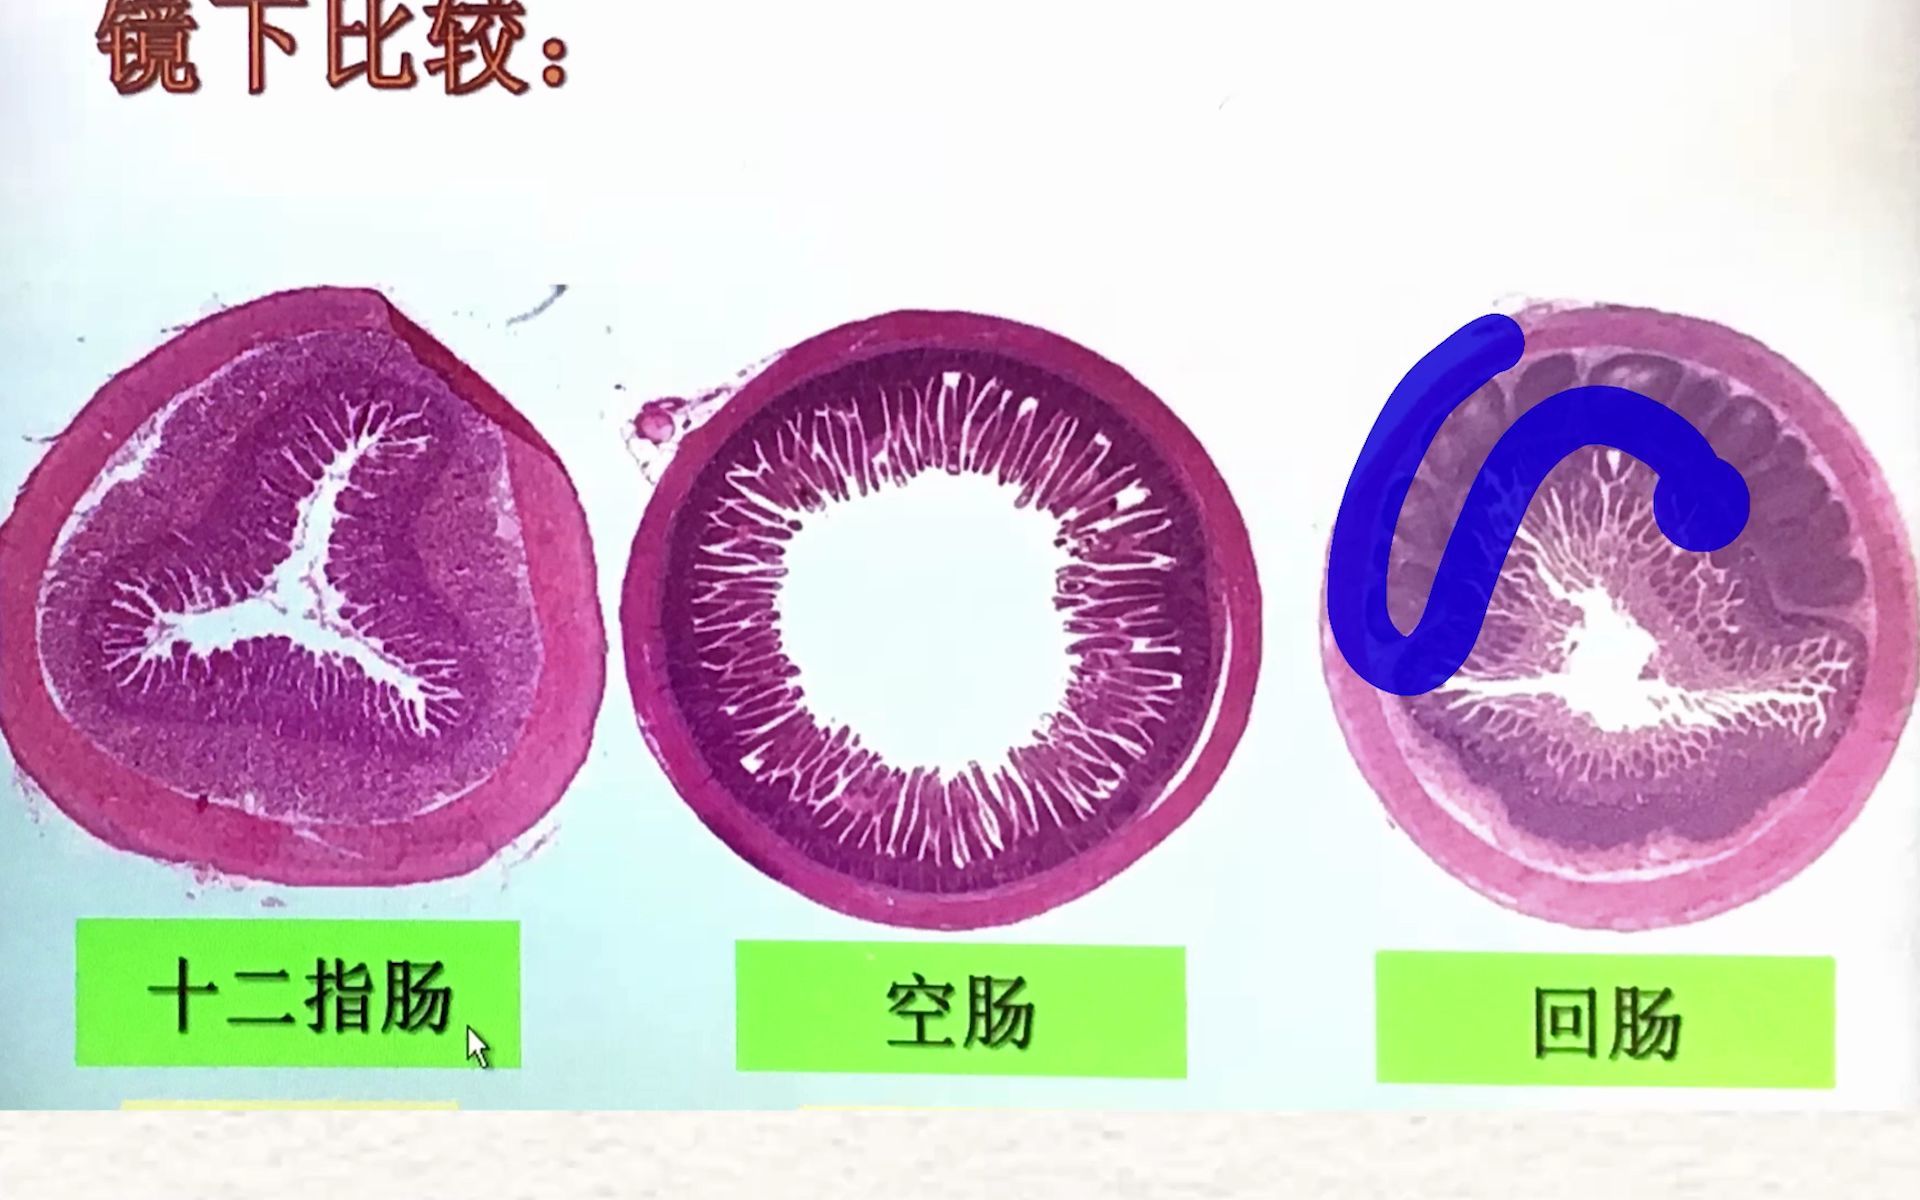 组胚消化管图片